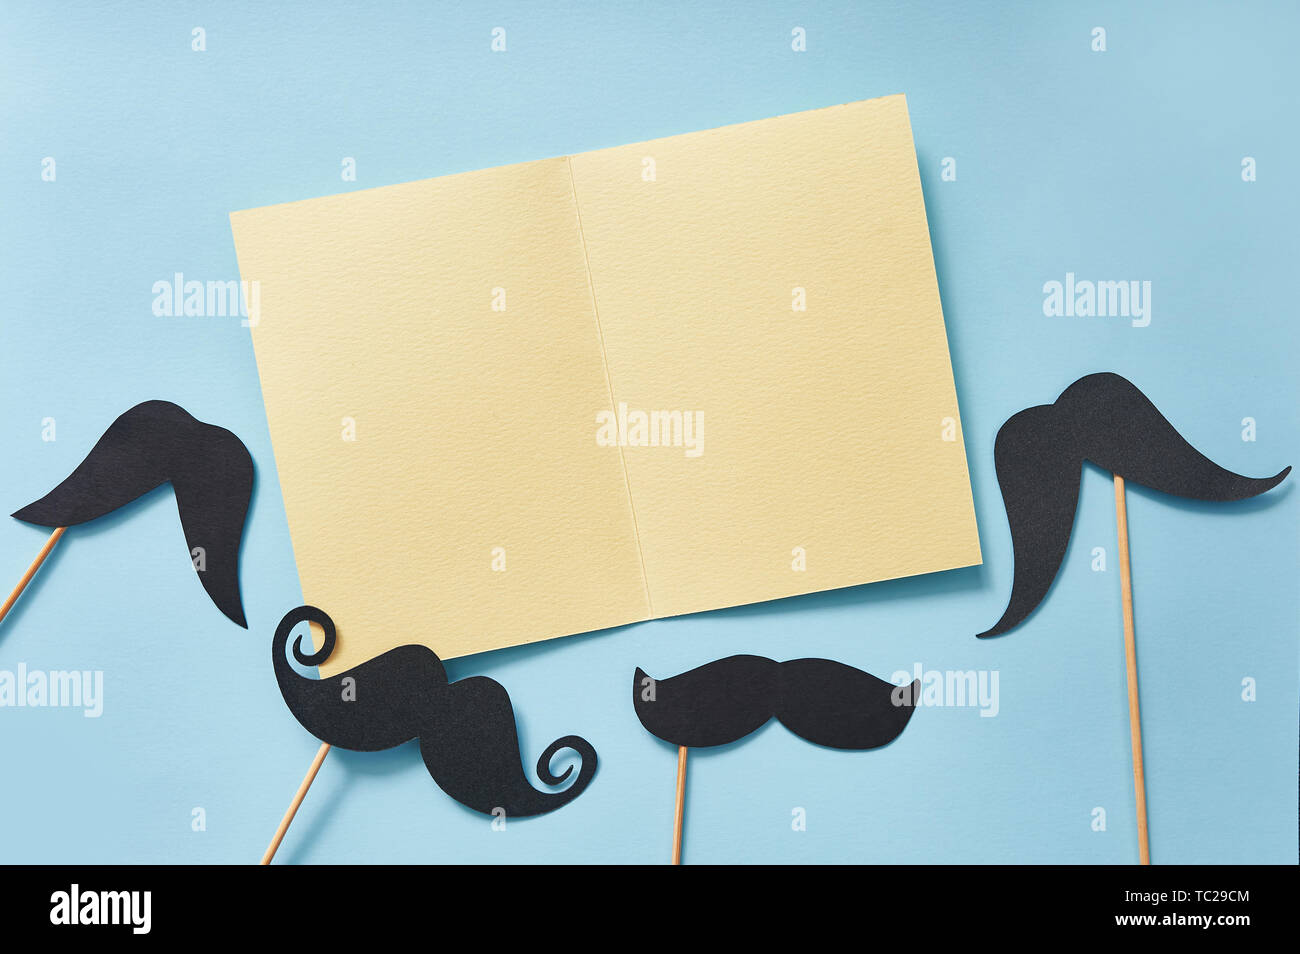 Mockup schwarzen Schnurrbärte auf blauem Papier Hintergrund Draufsicht. Glückwünsche zum Vatertag Grußkarte mit gelbem Blatt Papier und Platz für Text. Hipster Stockfoto